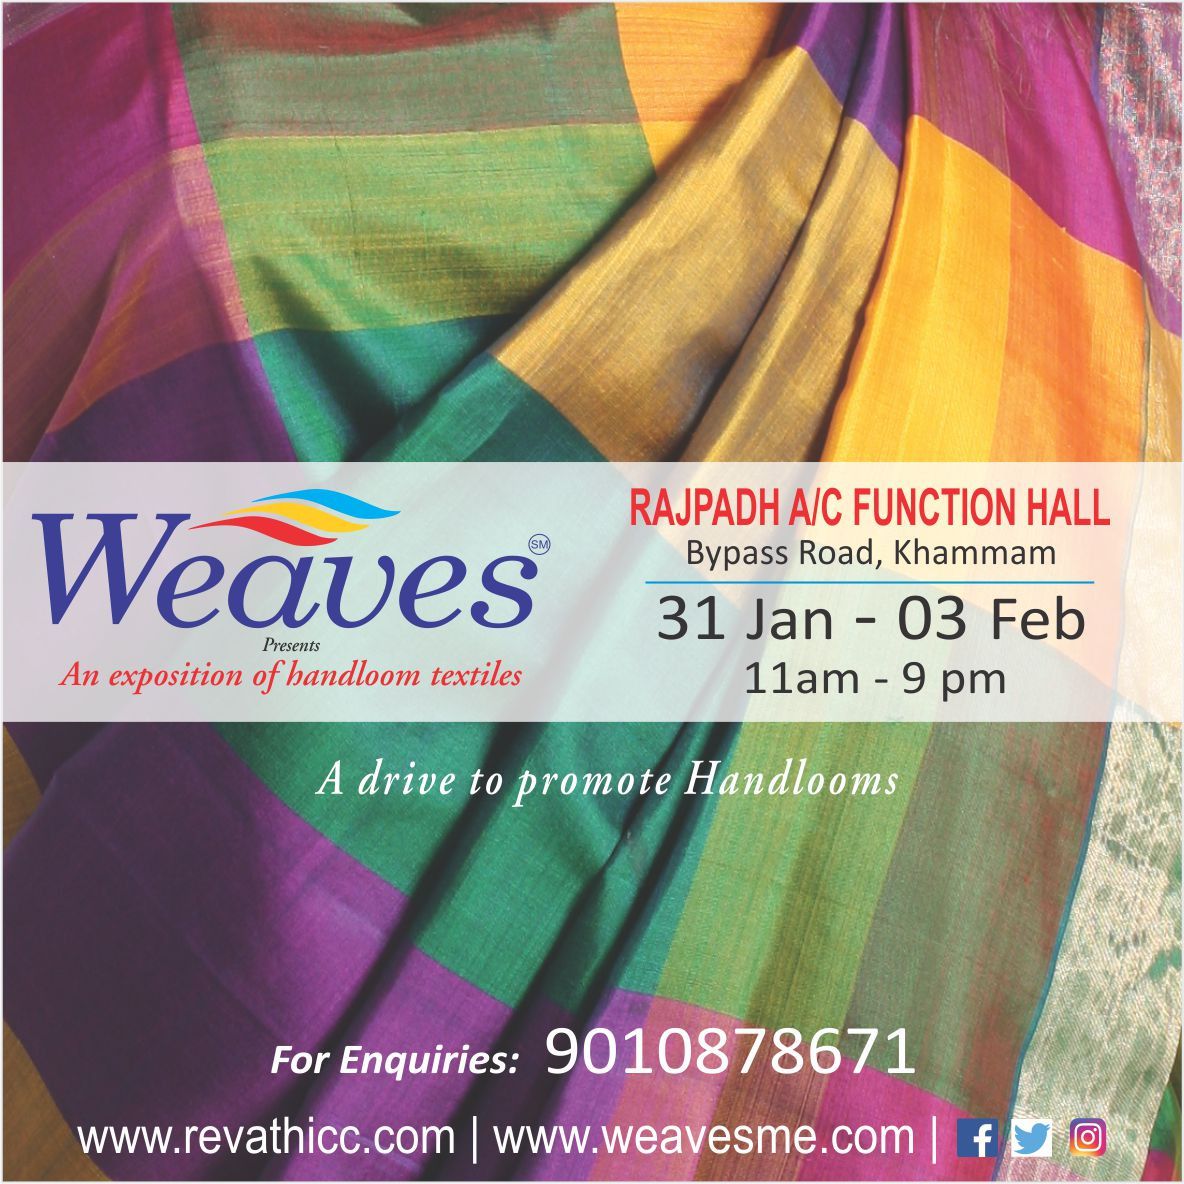 Weaves Handloom Exhibitions